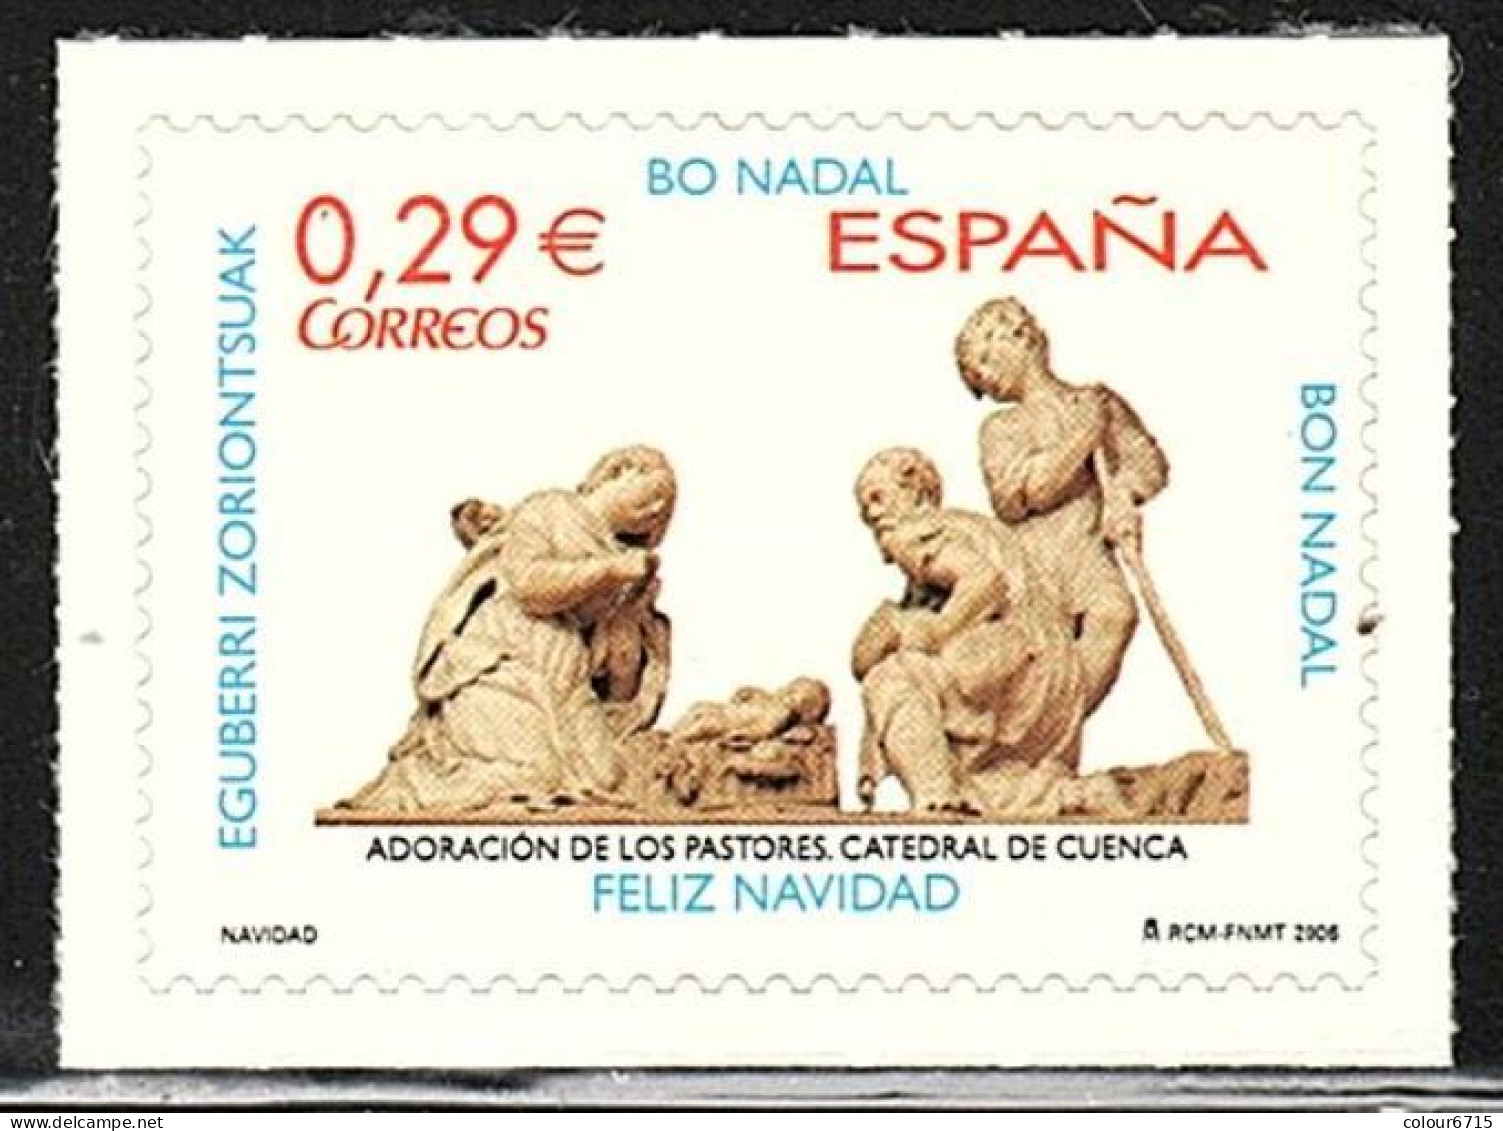 Spain 2006 Navidad Christmas Adoracion De Los Pastores Catedral De Cuenca Stamp 1v MNH - Nuevos